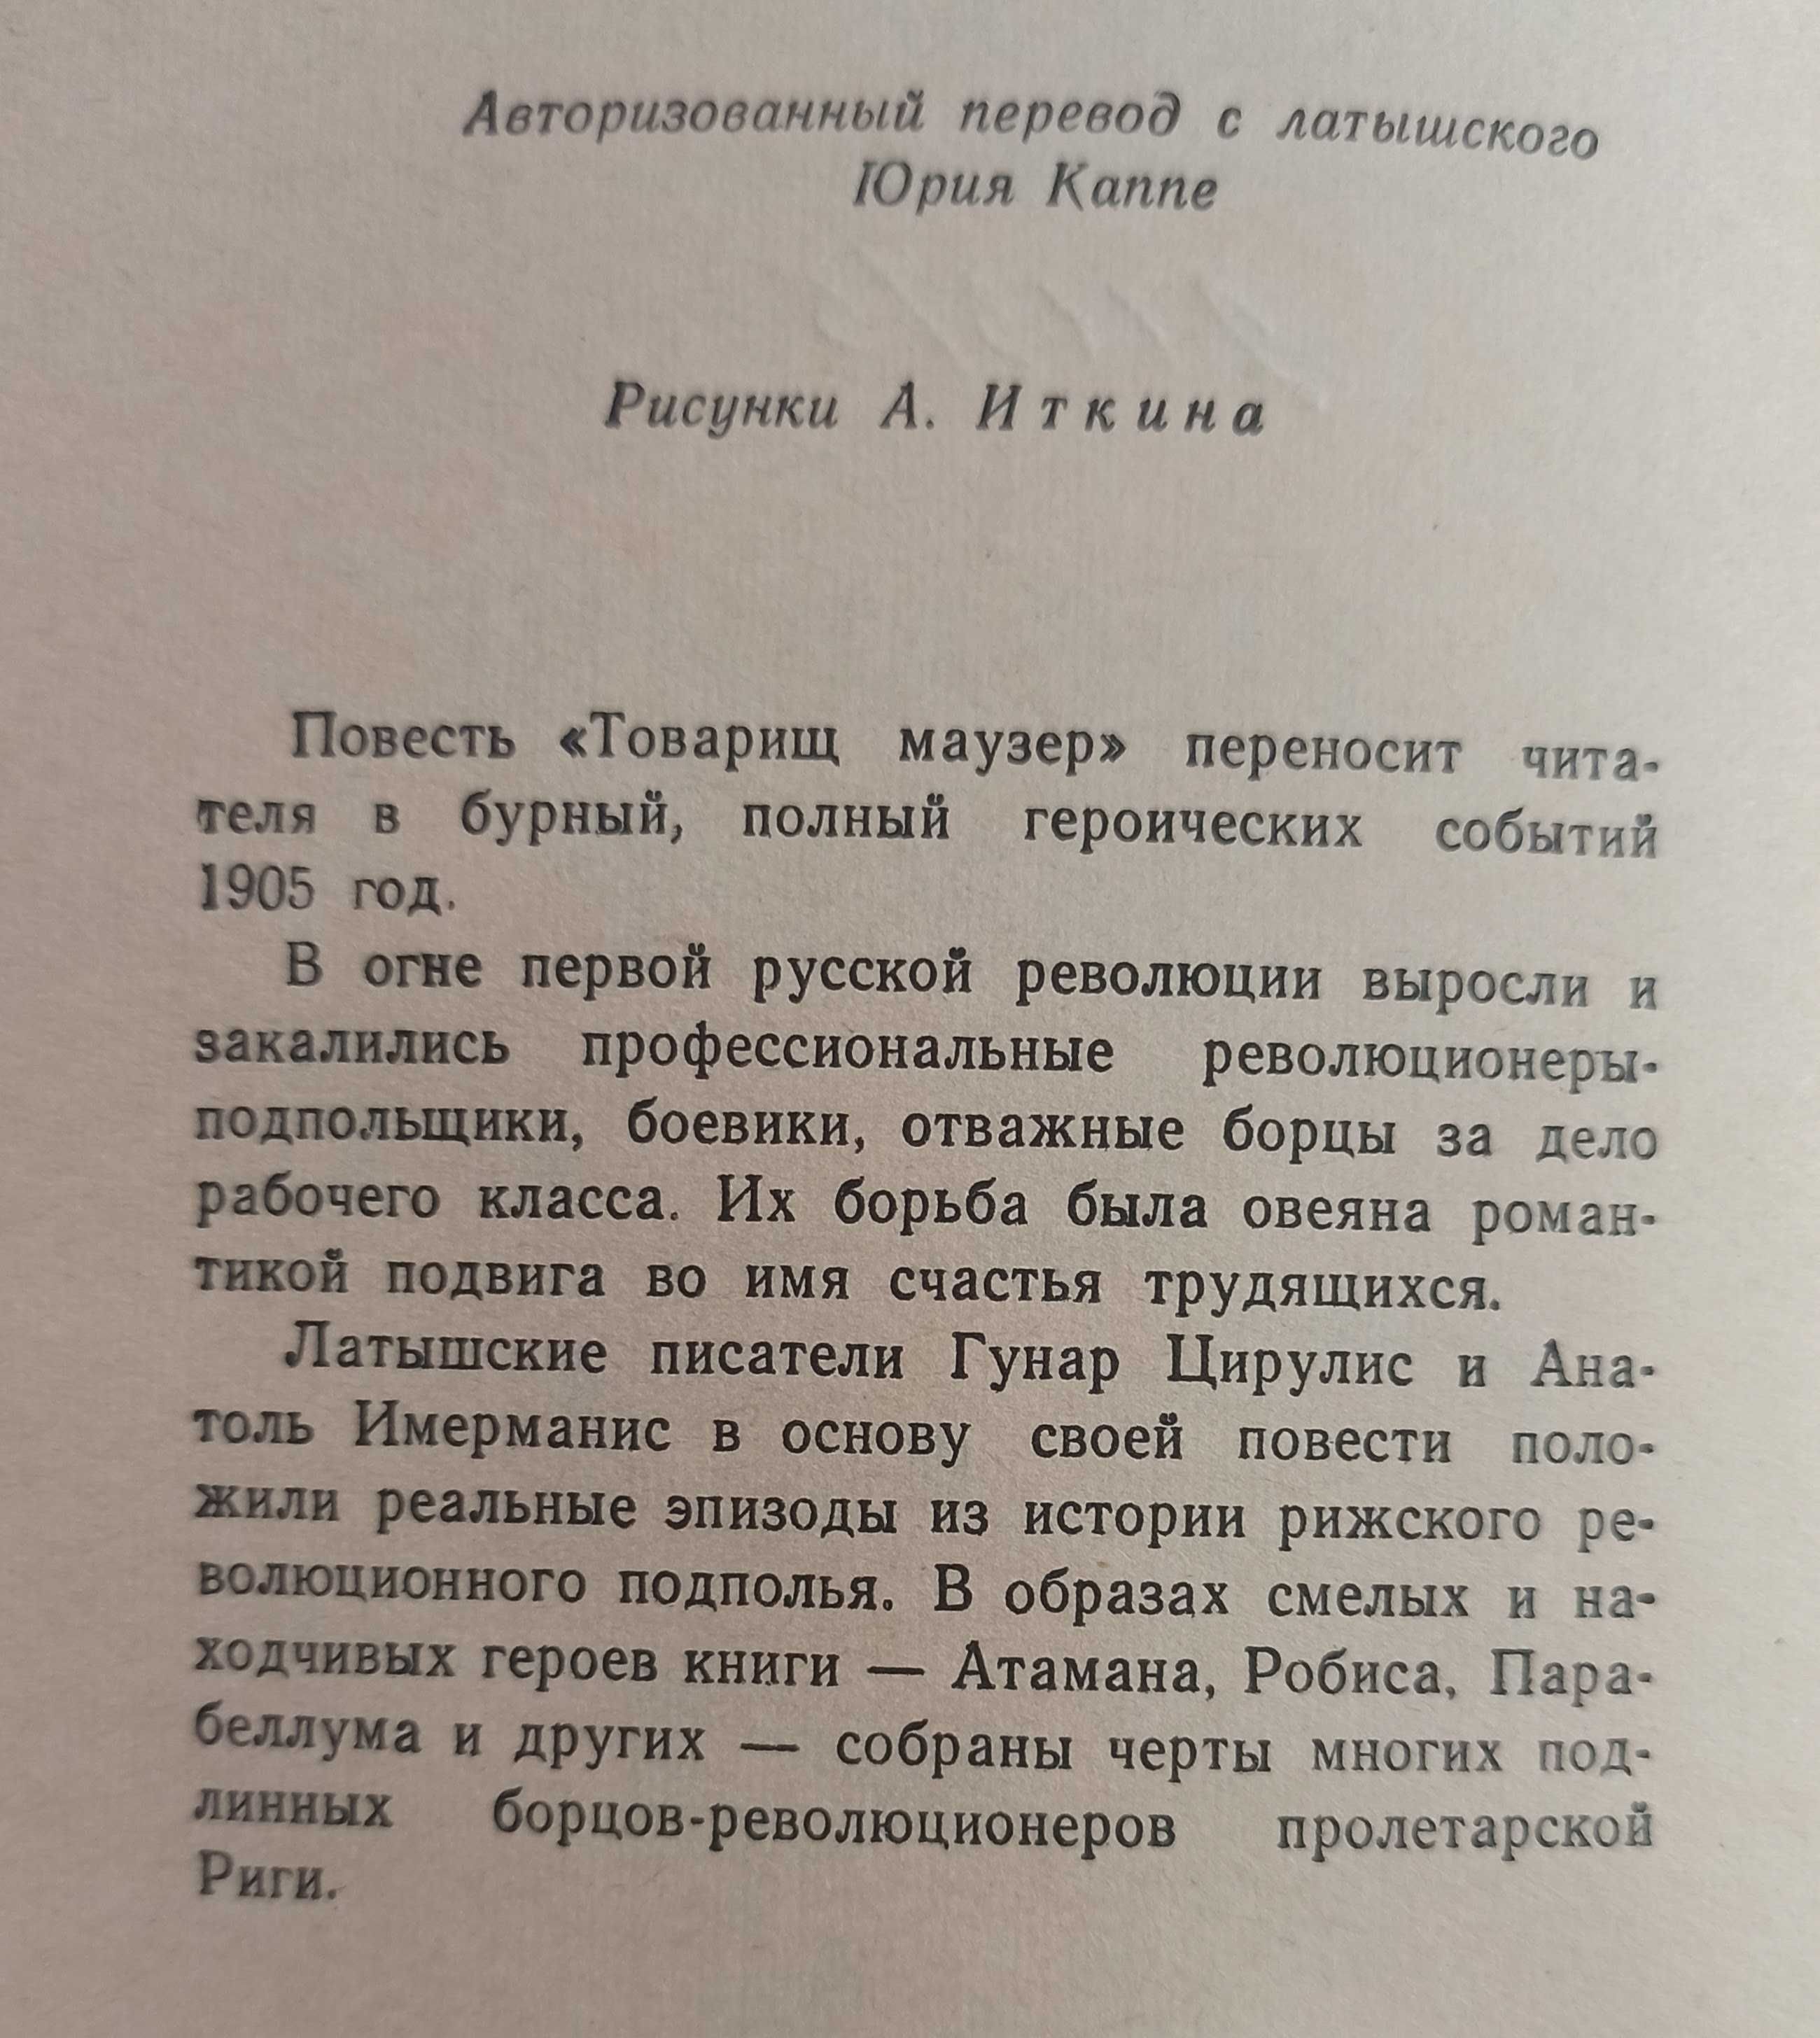 Книга Г. Цирулис та А. Имерманс  "Товарищ Маузер" 1960 рік